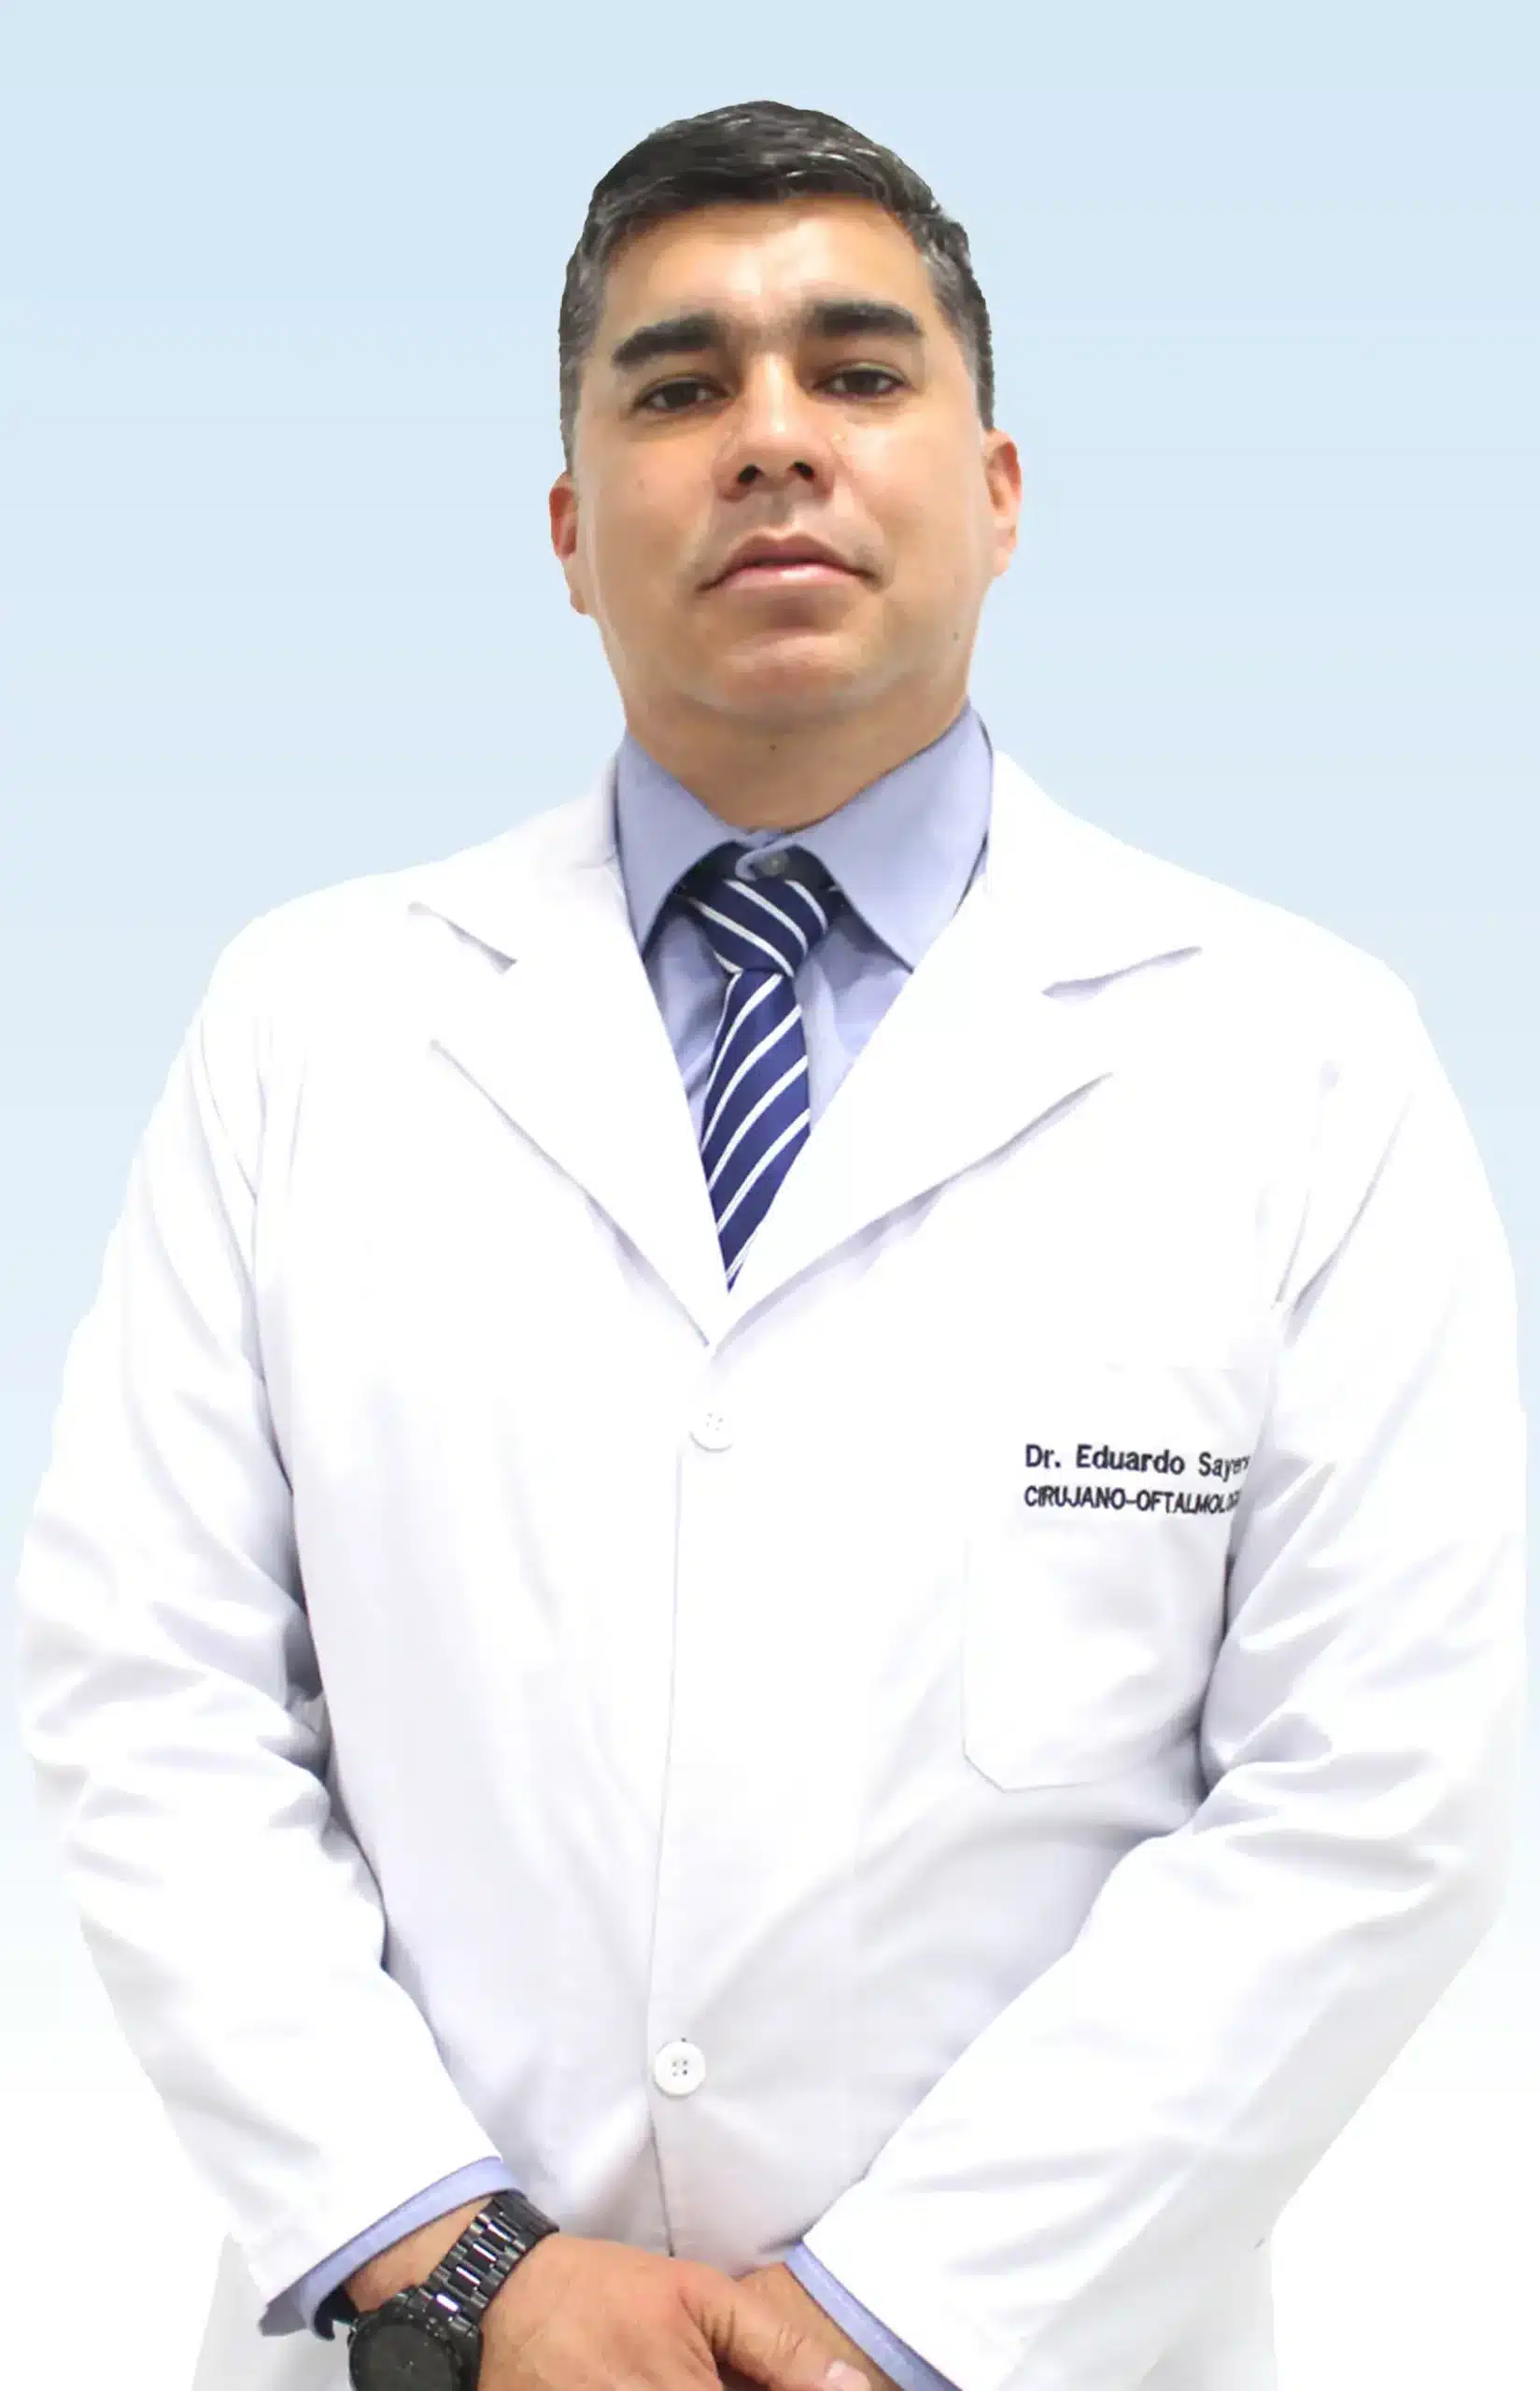 Dr. Eduardo Sayers Da Silva